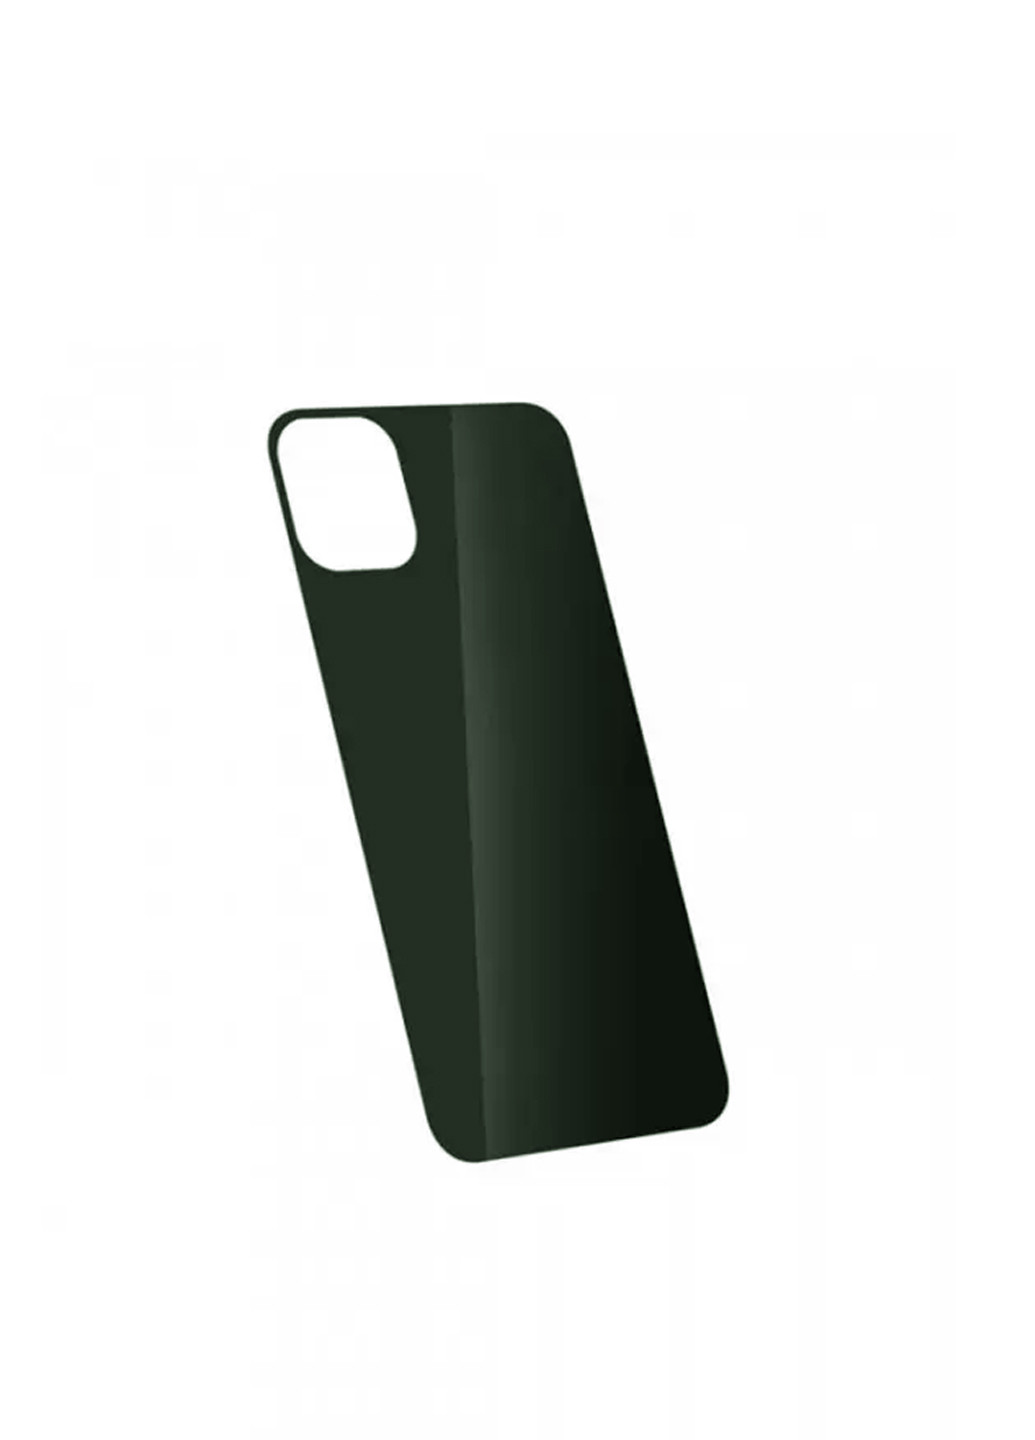 Стекло защитное на заднюю панель цветное глянцевое для iPhone 11 Pro Max Dark Green CAA (220512621)